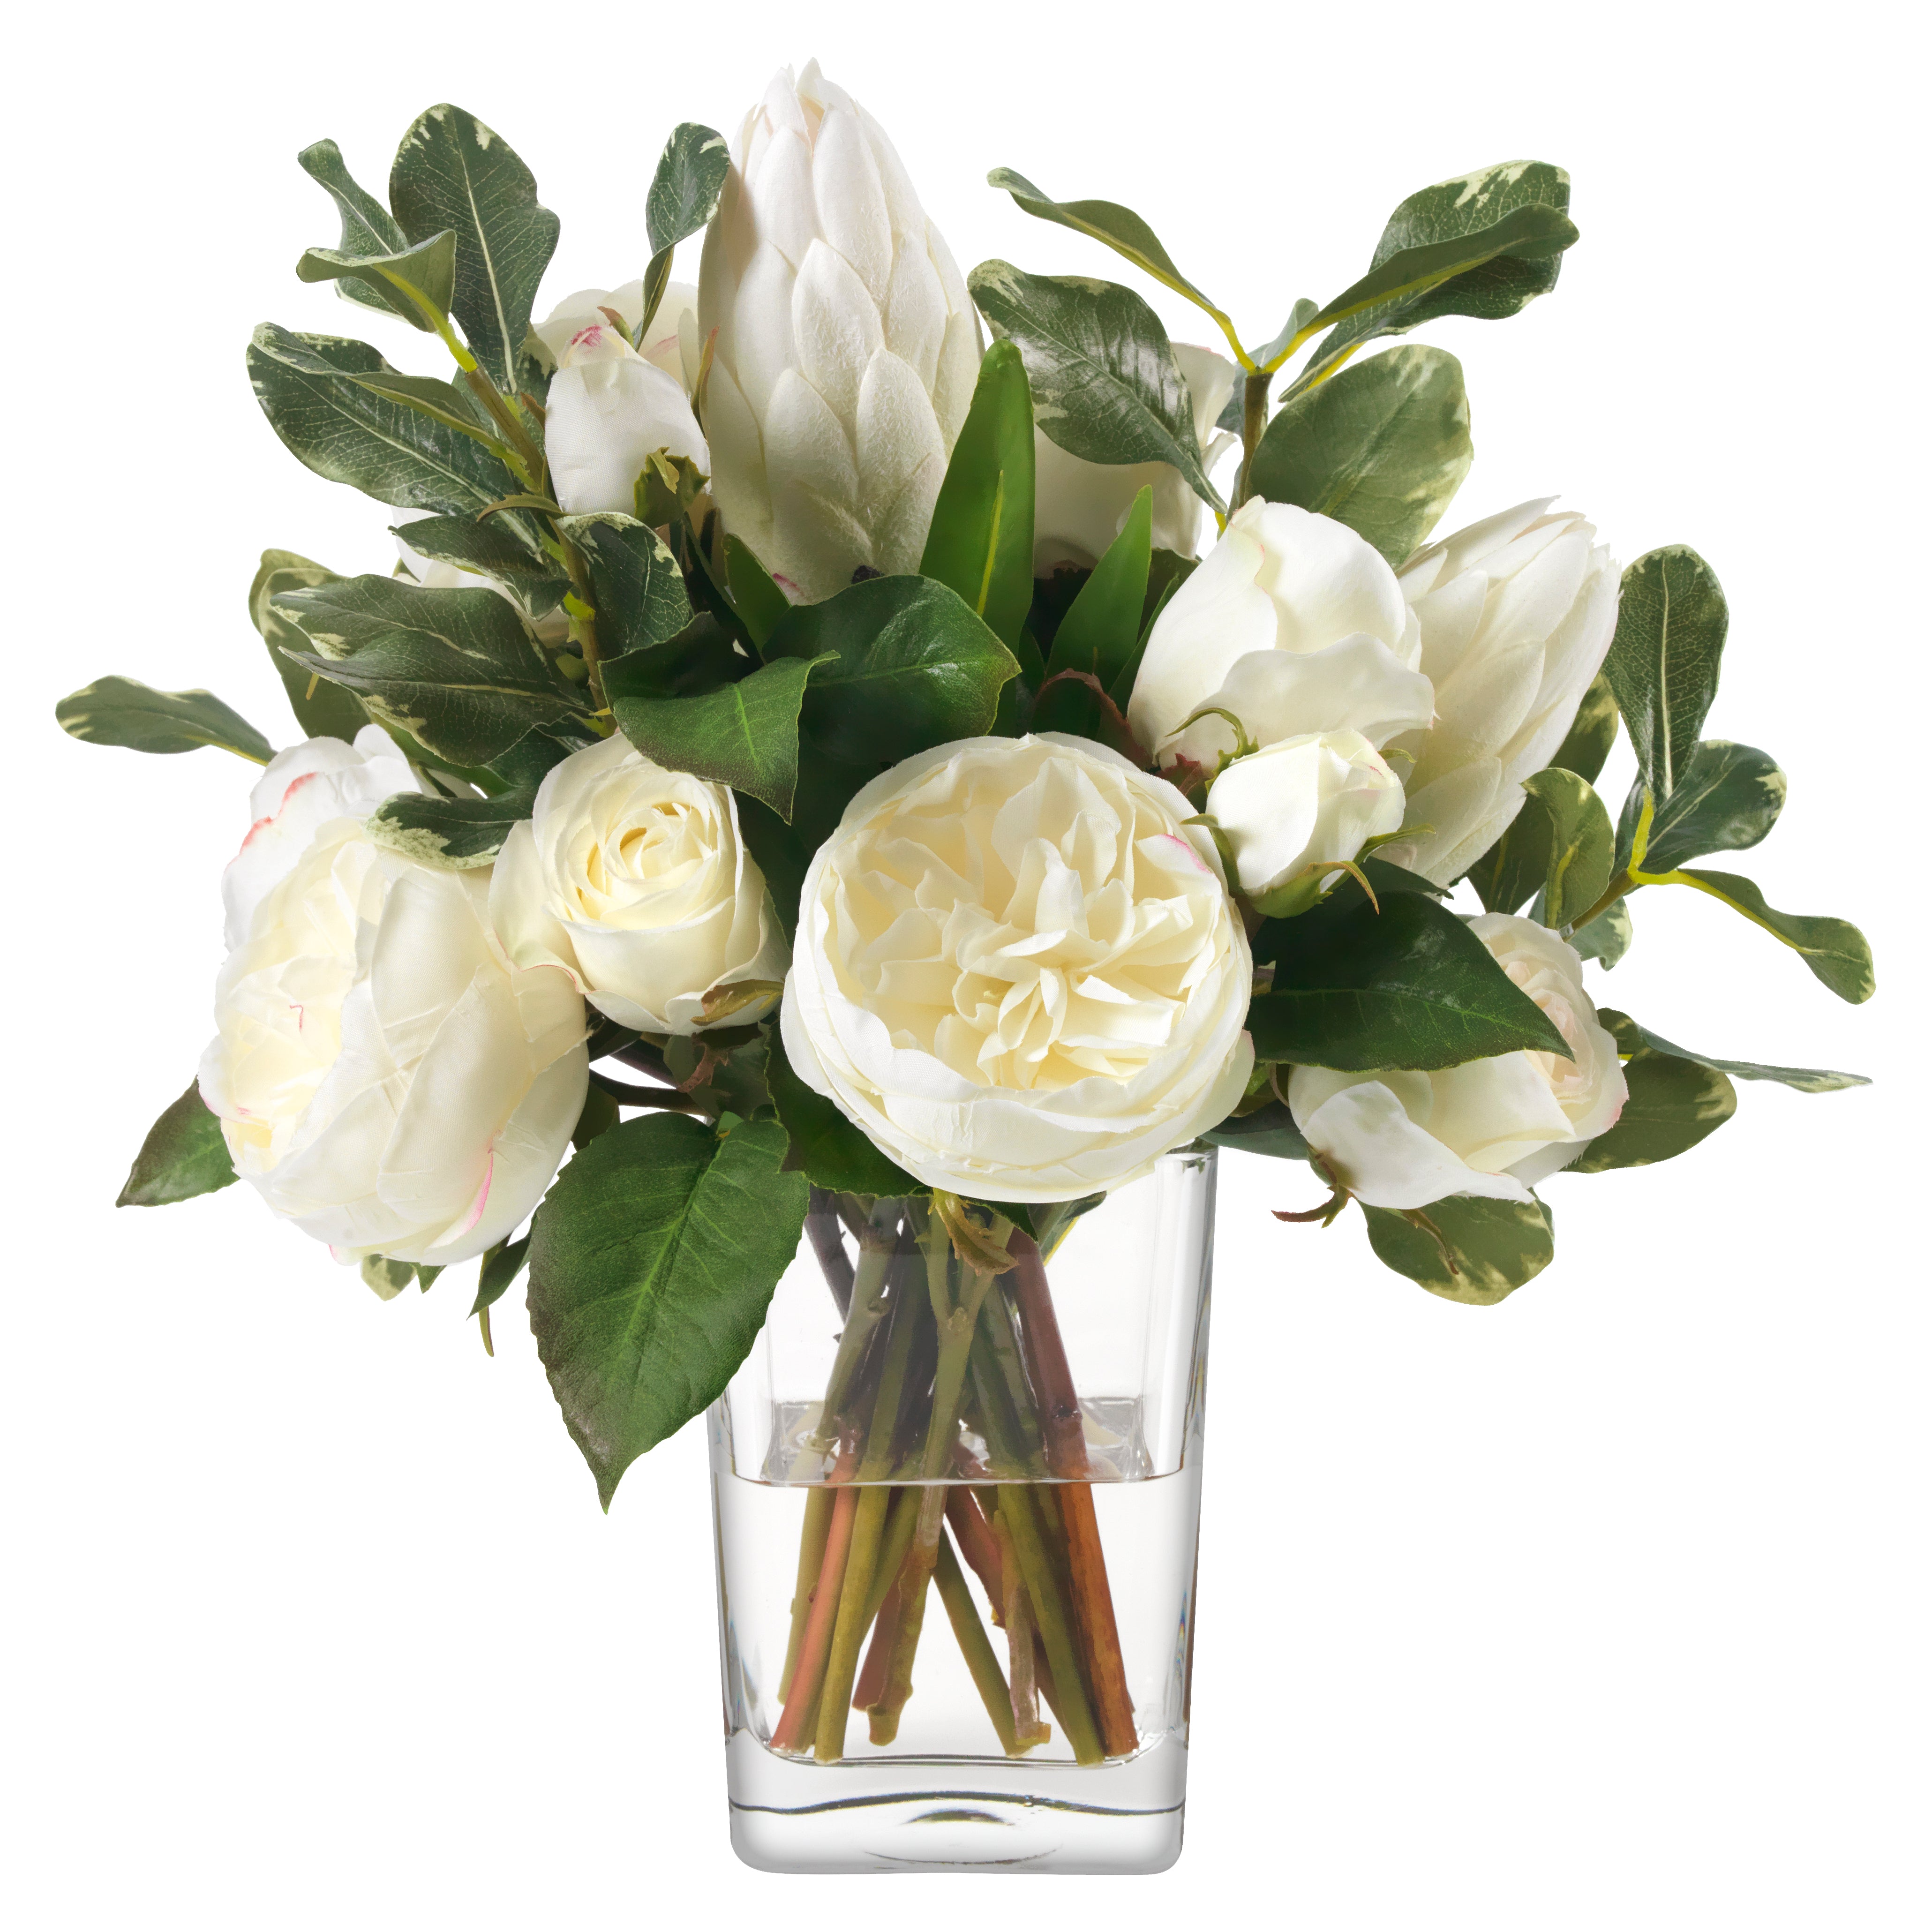 Diane James White Protea & Roses in Vase